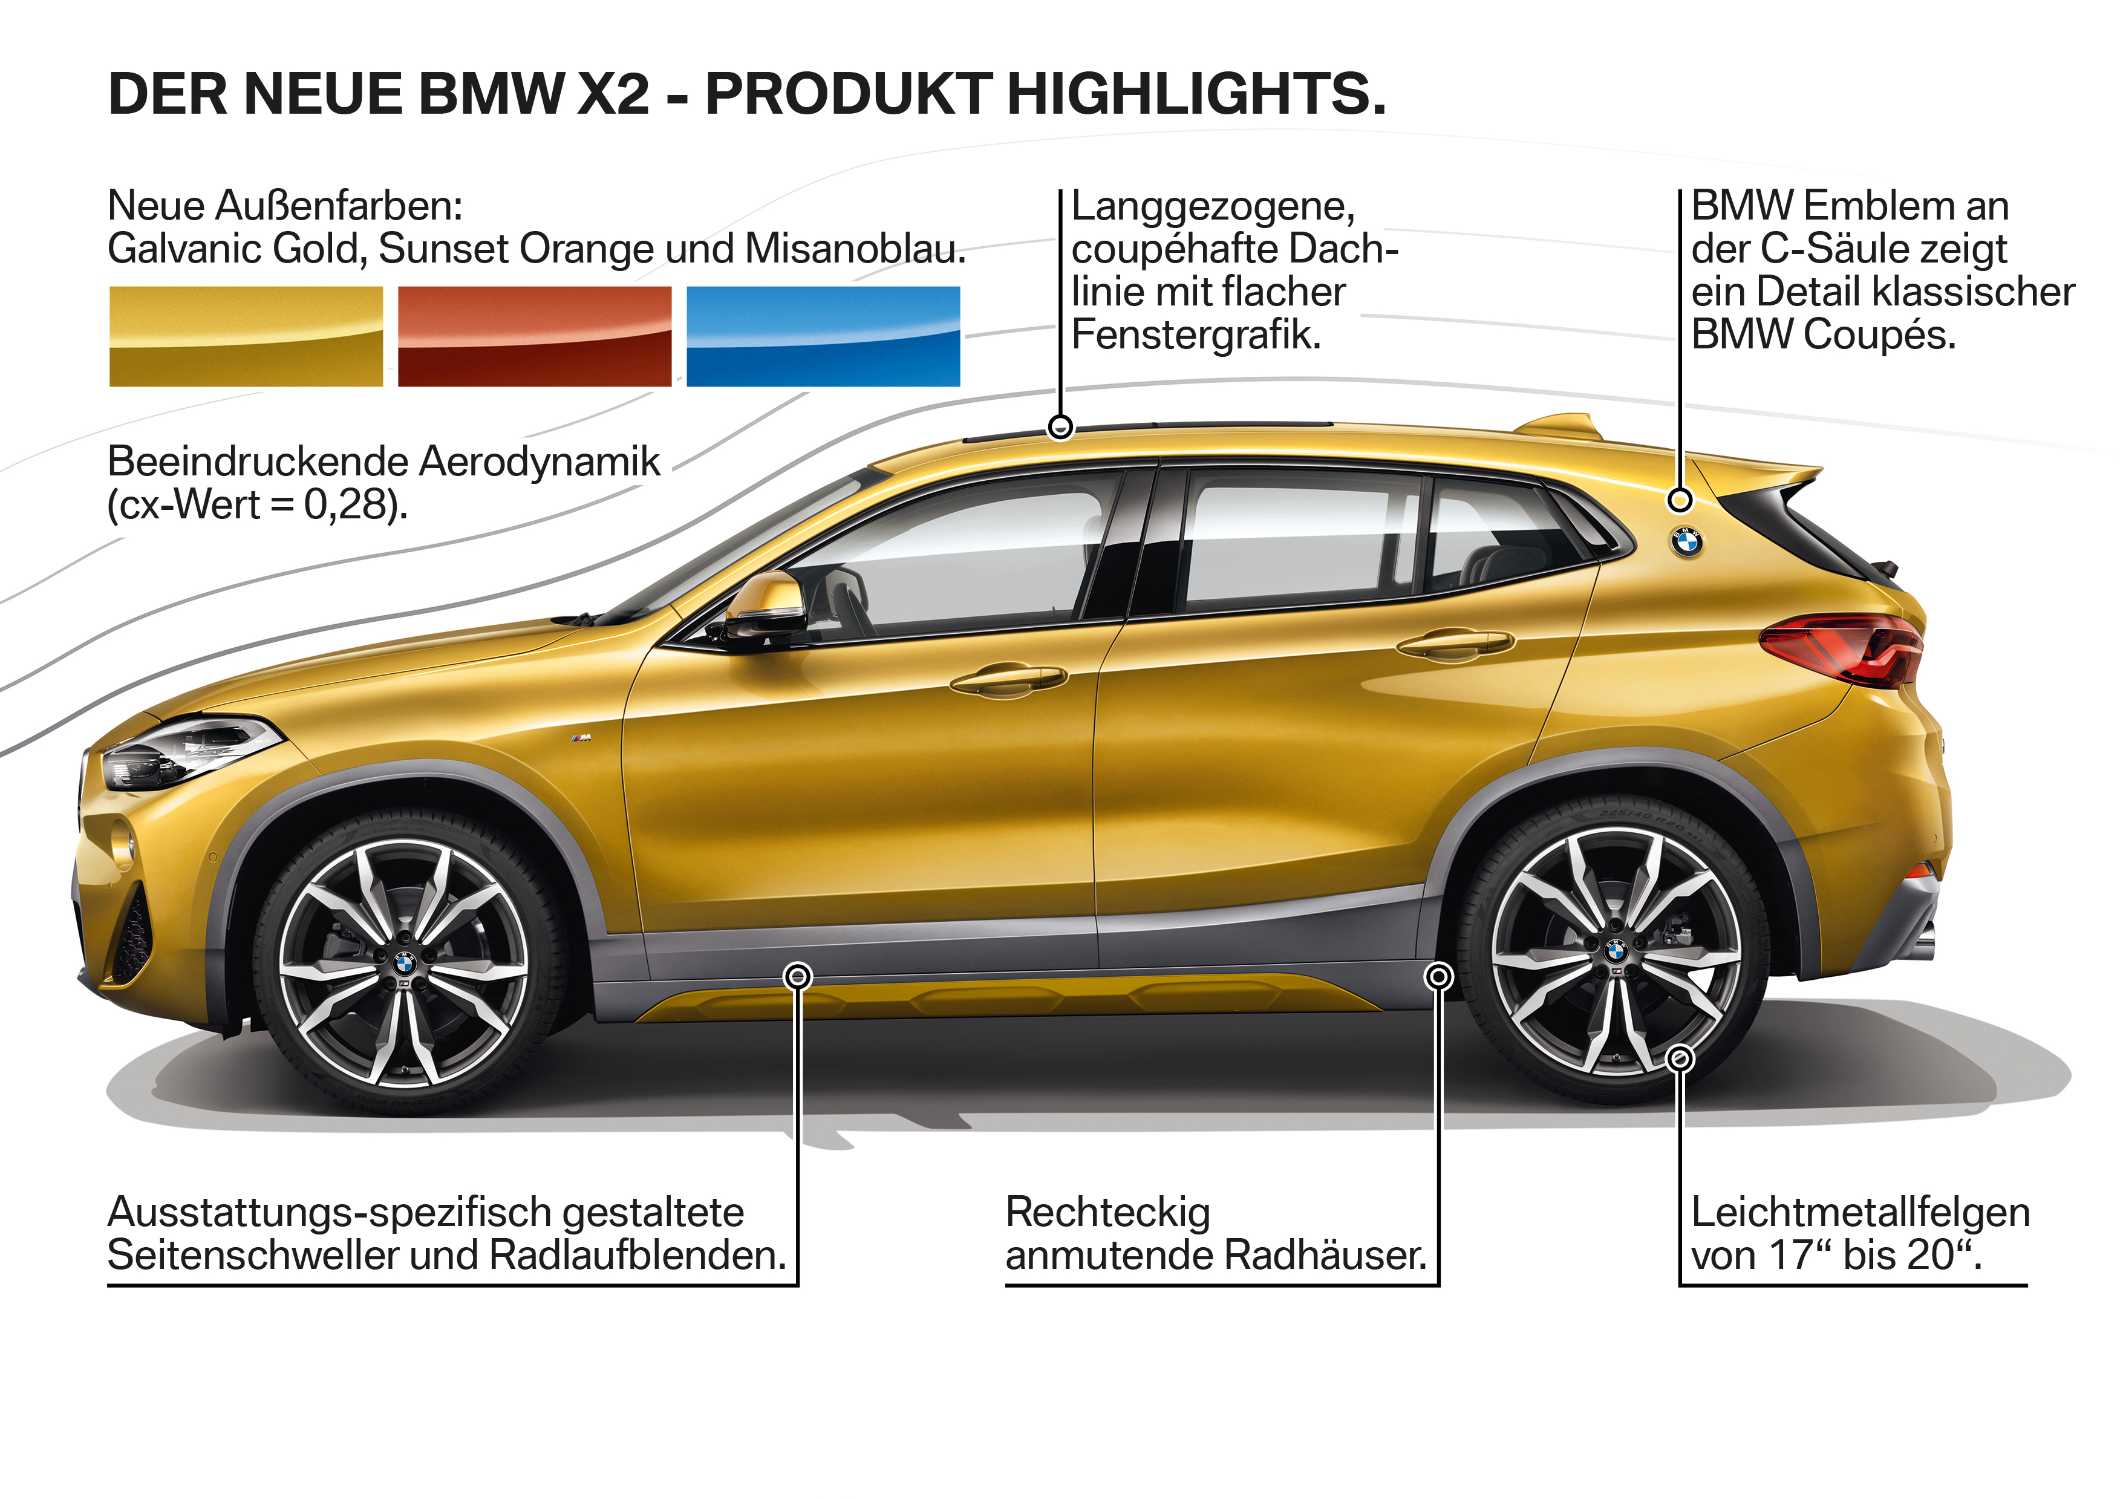 Der neue BMW X2 - Produkt Highlights (10/2017).